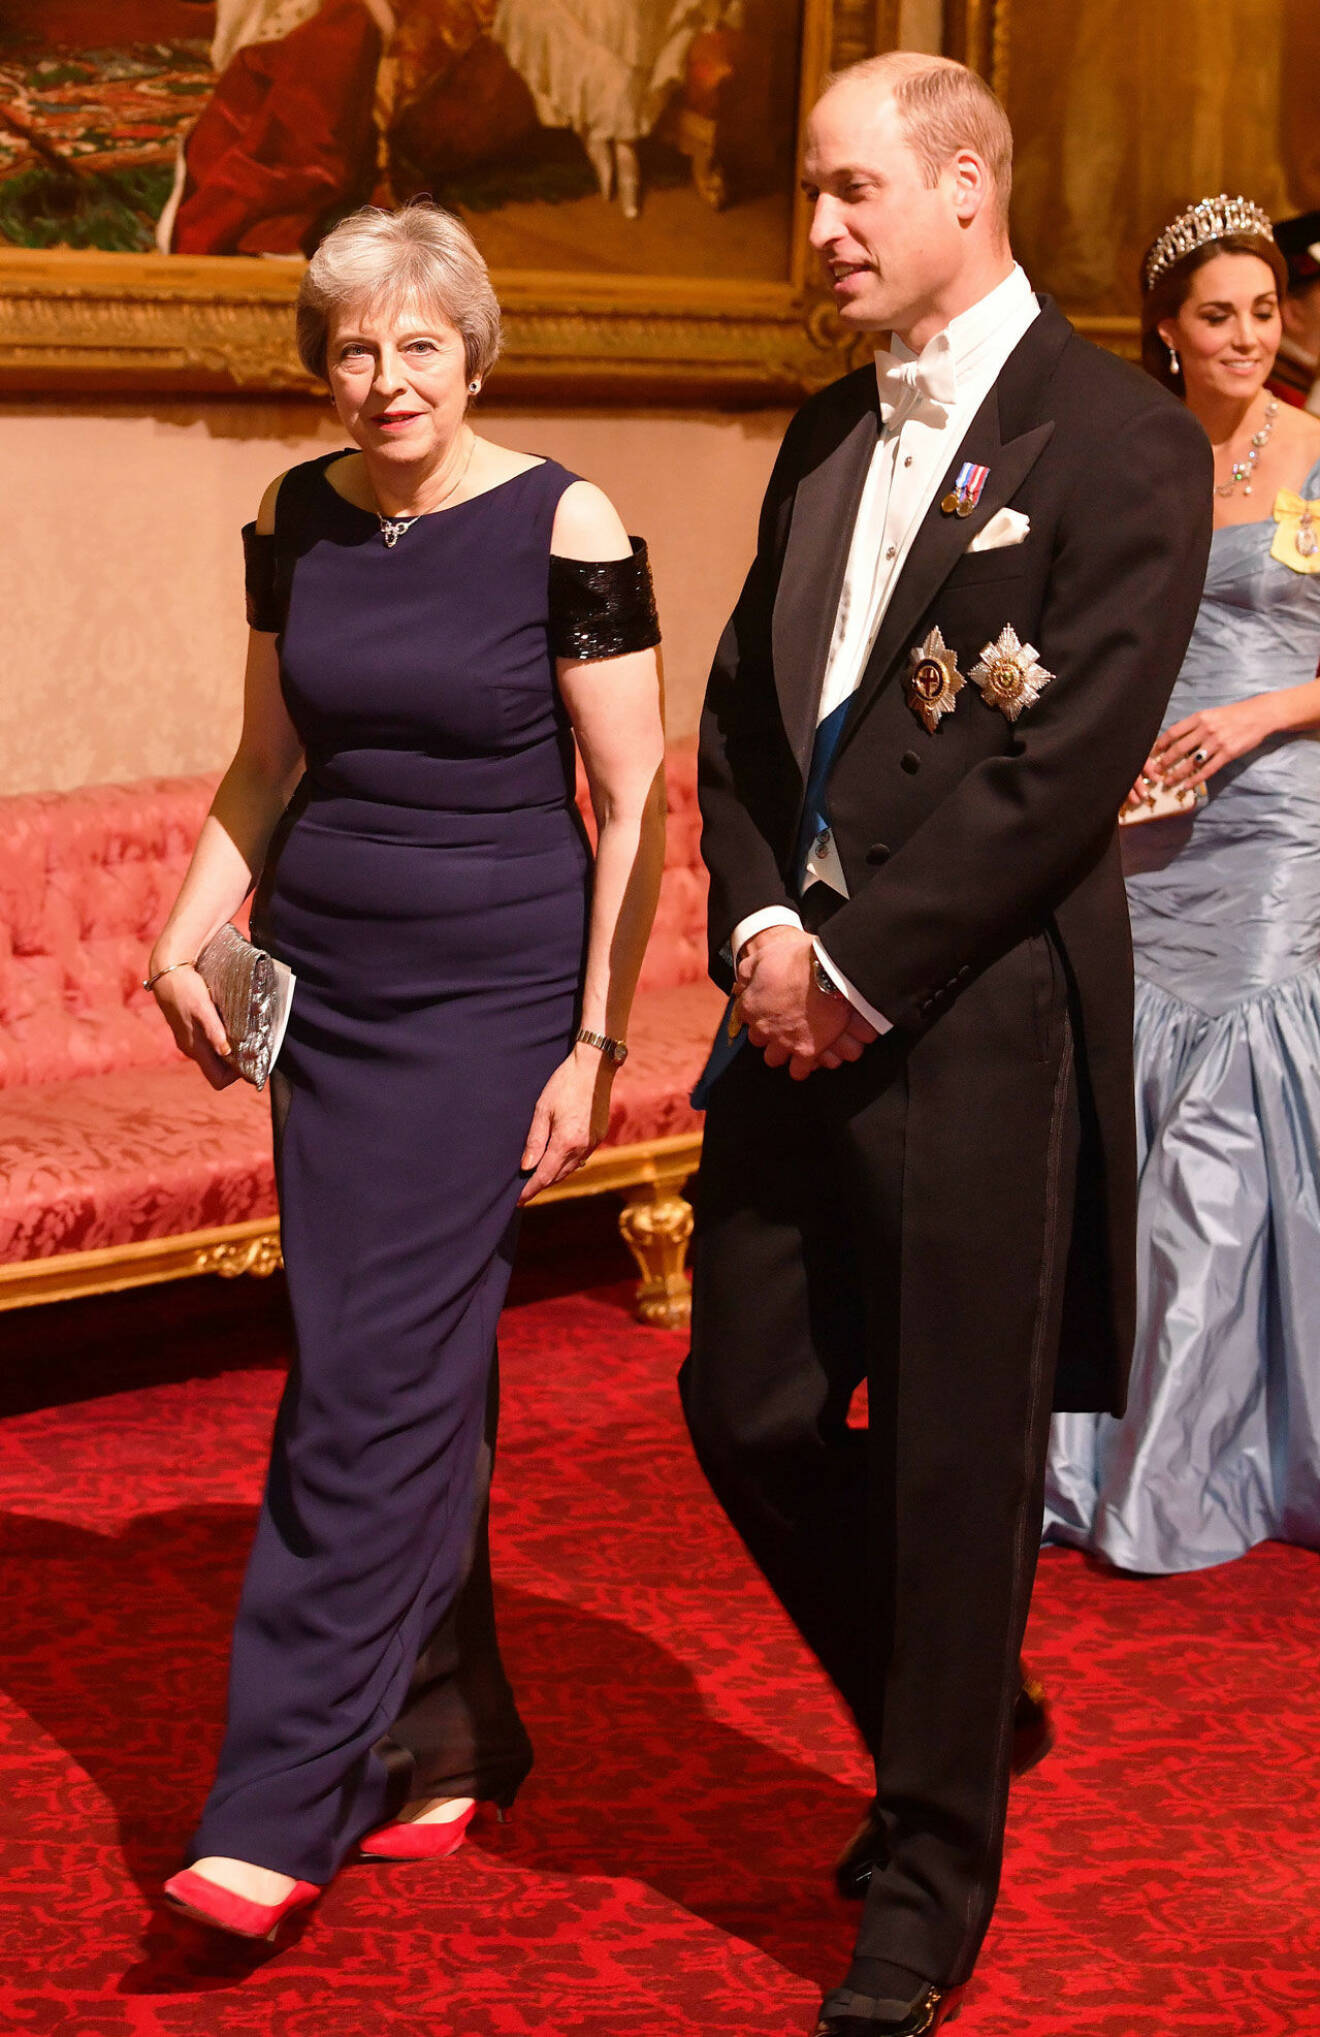 Något mindre uppklädd var premiärminister Theresa May, som hade prins William till bordet.